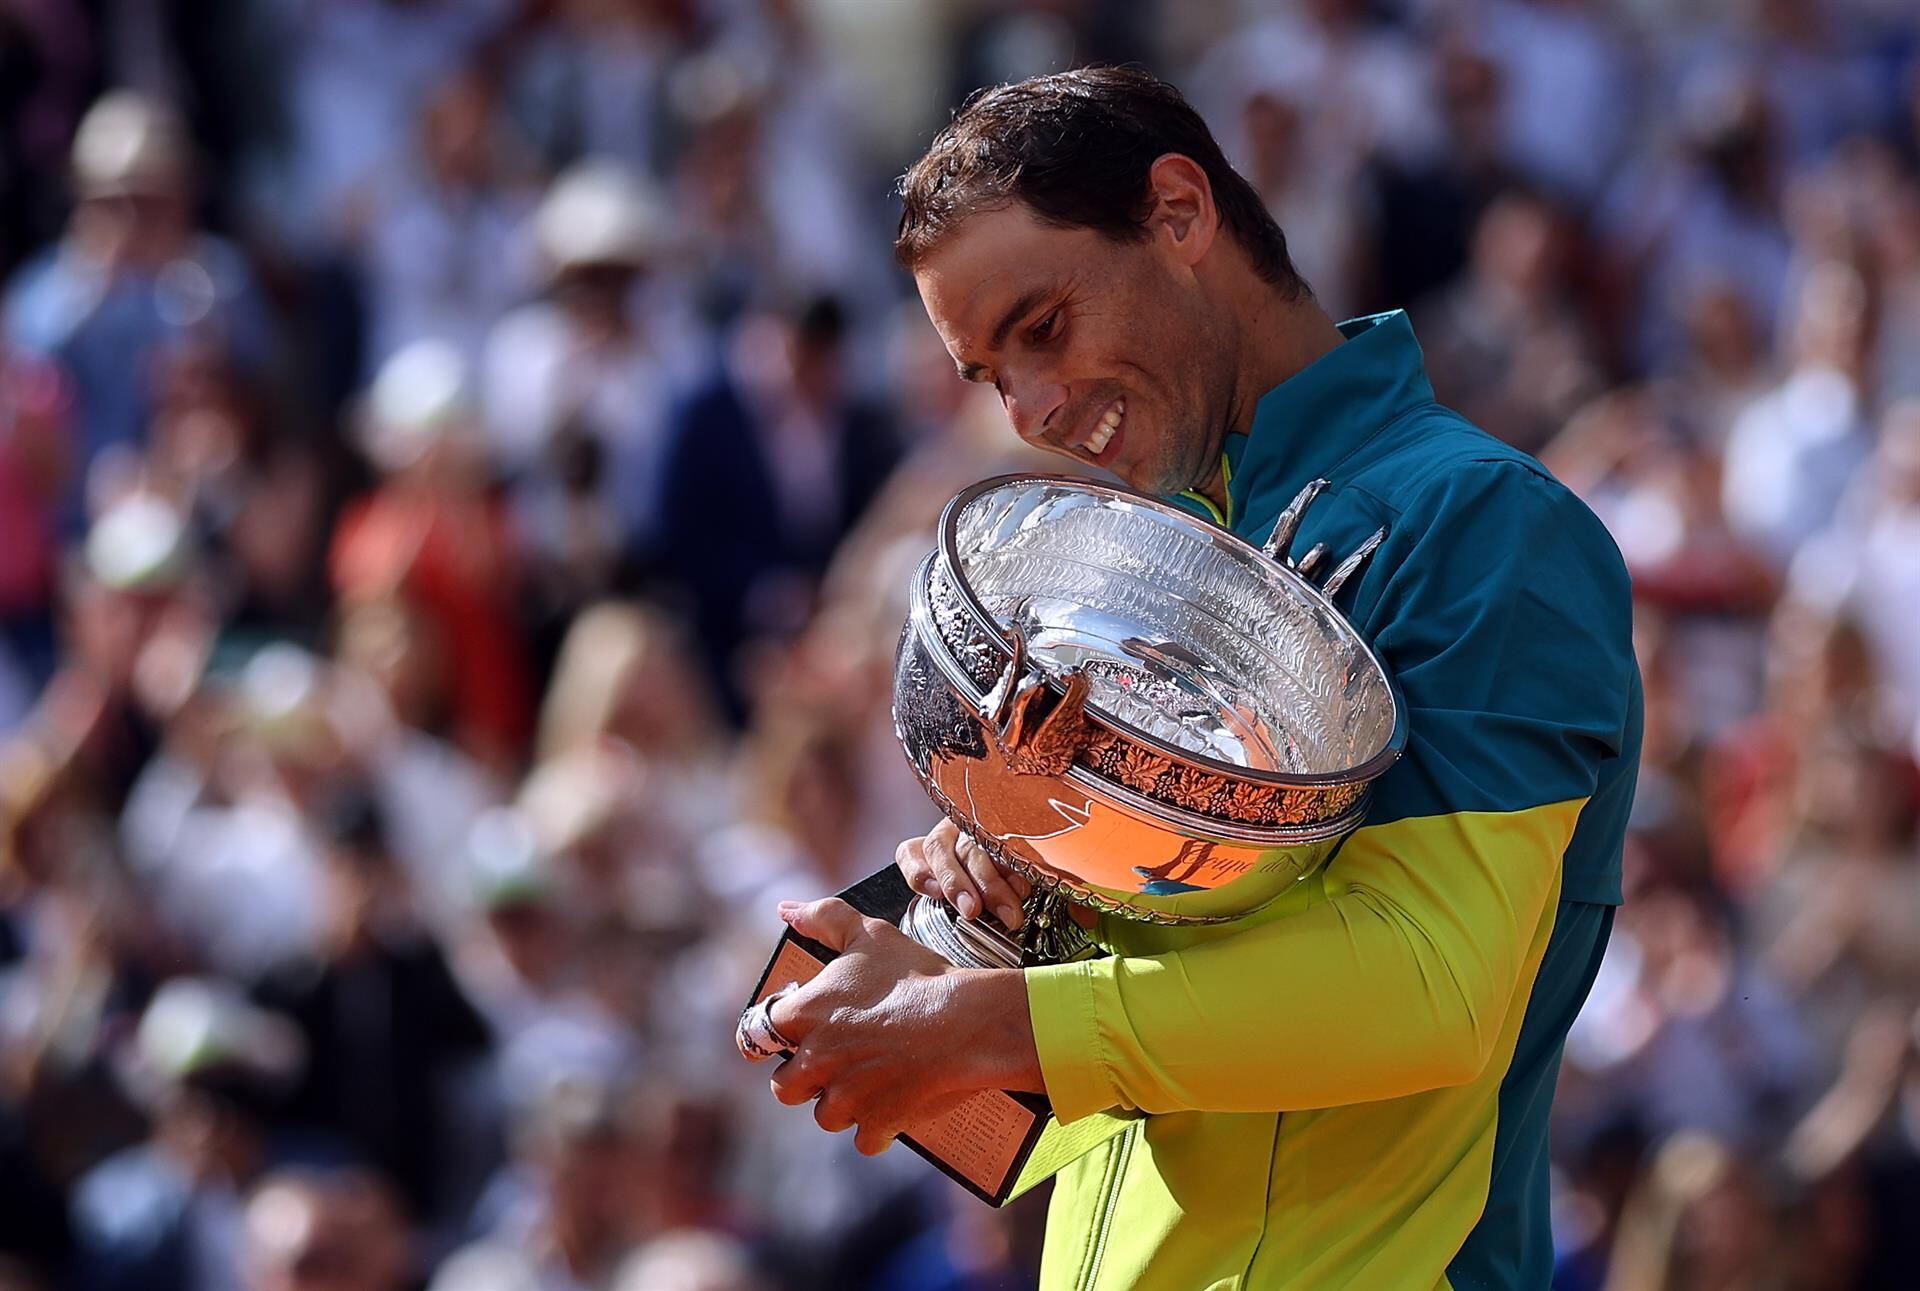 ‘Voy a luchar por volver el máximo de años’: Rafal Nadal tras ganar su 14 Roland Garros